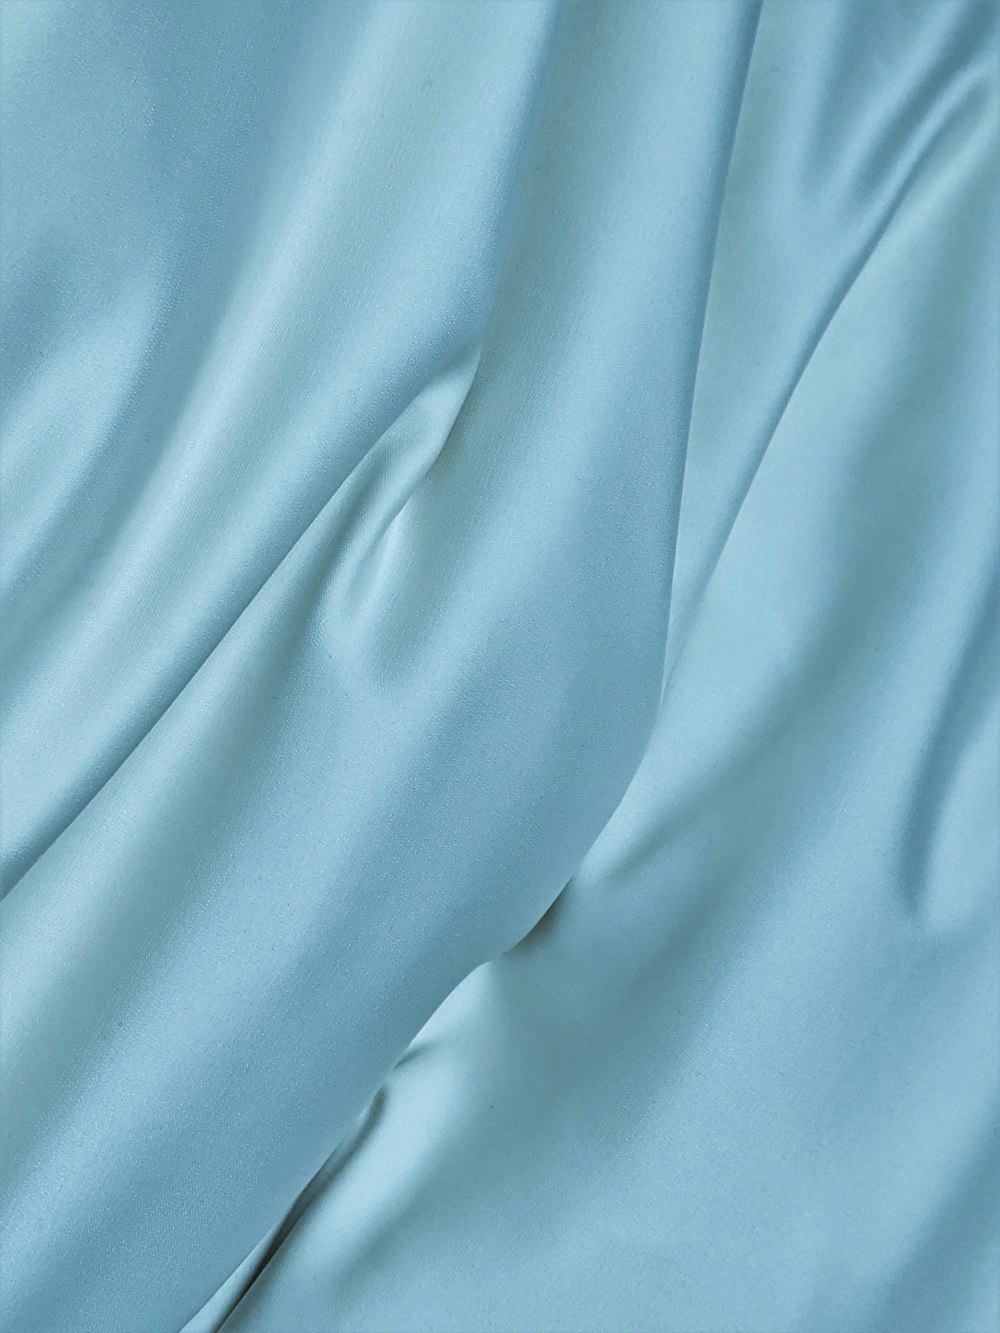 Textil azul en fotografía de primer plano